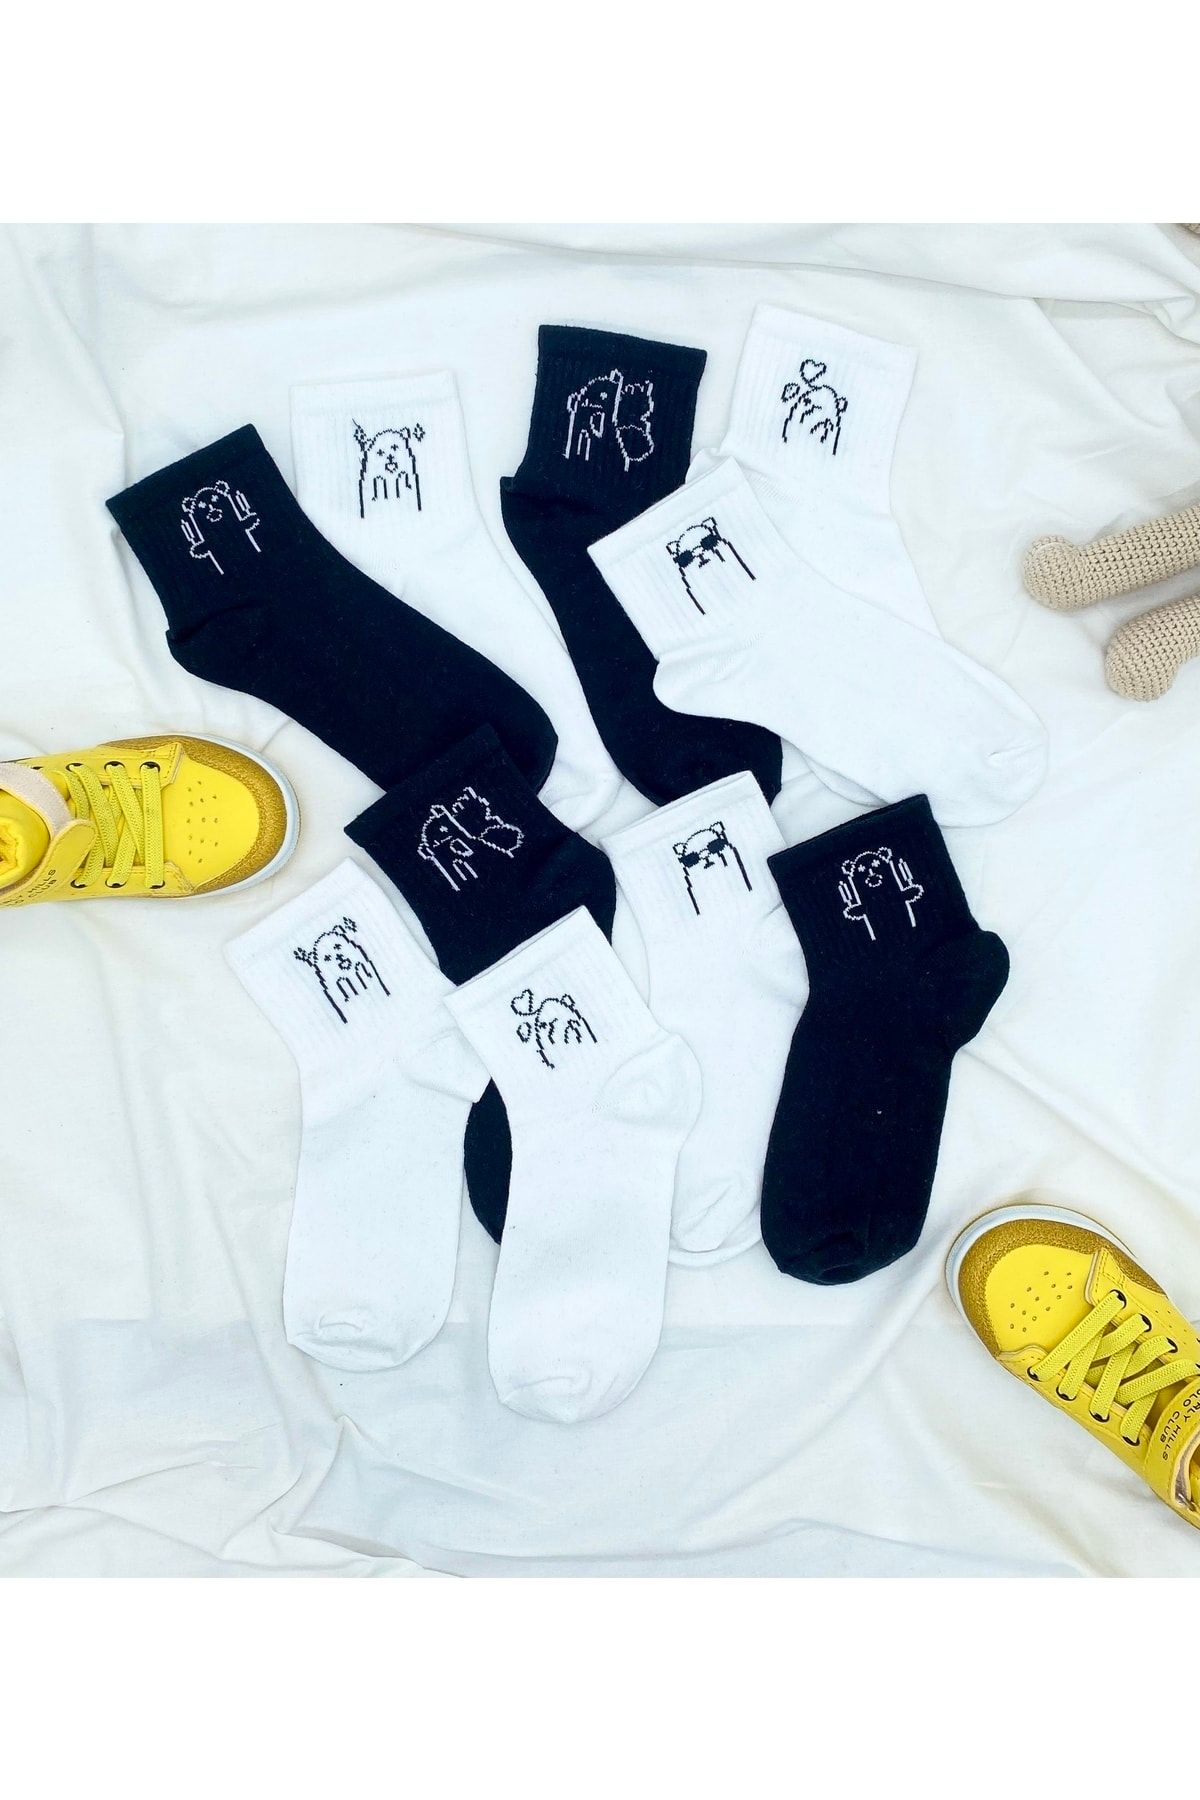 DANS SOCKS 5 Çift Komik Yarım Konç Beyaz Ve Siyah Çizgi Film Sevimli Ayı Desenli Çorap Seti